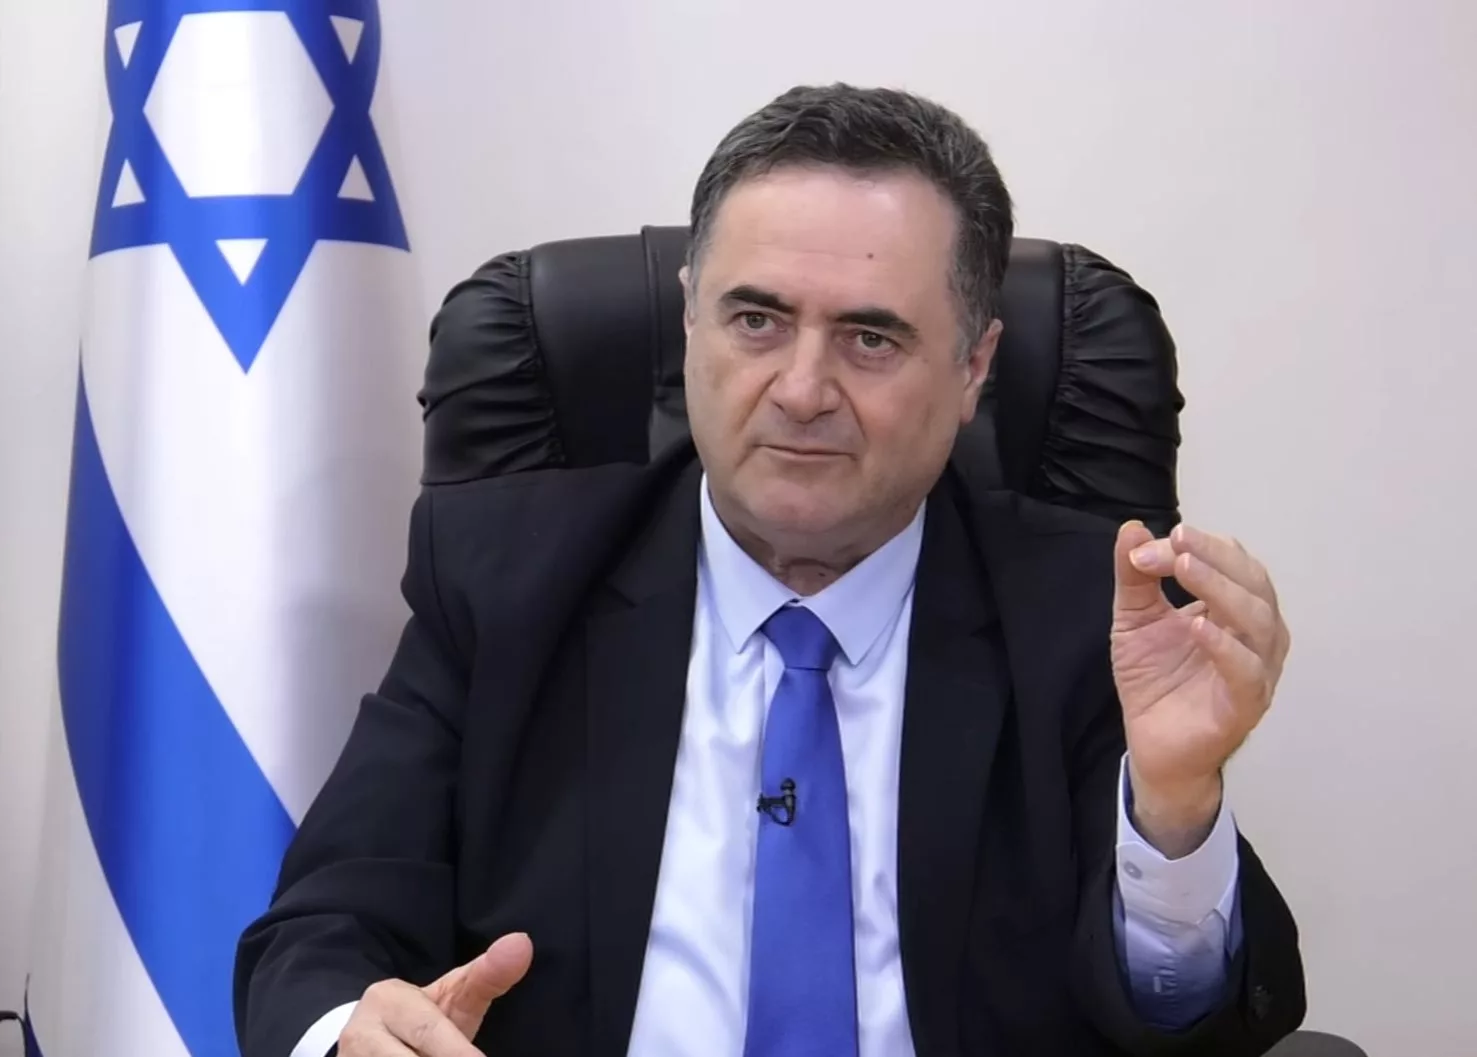 Participare istorică: Ministrul de Externe al Israelului vine la Summitul NATO de la Washington